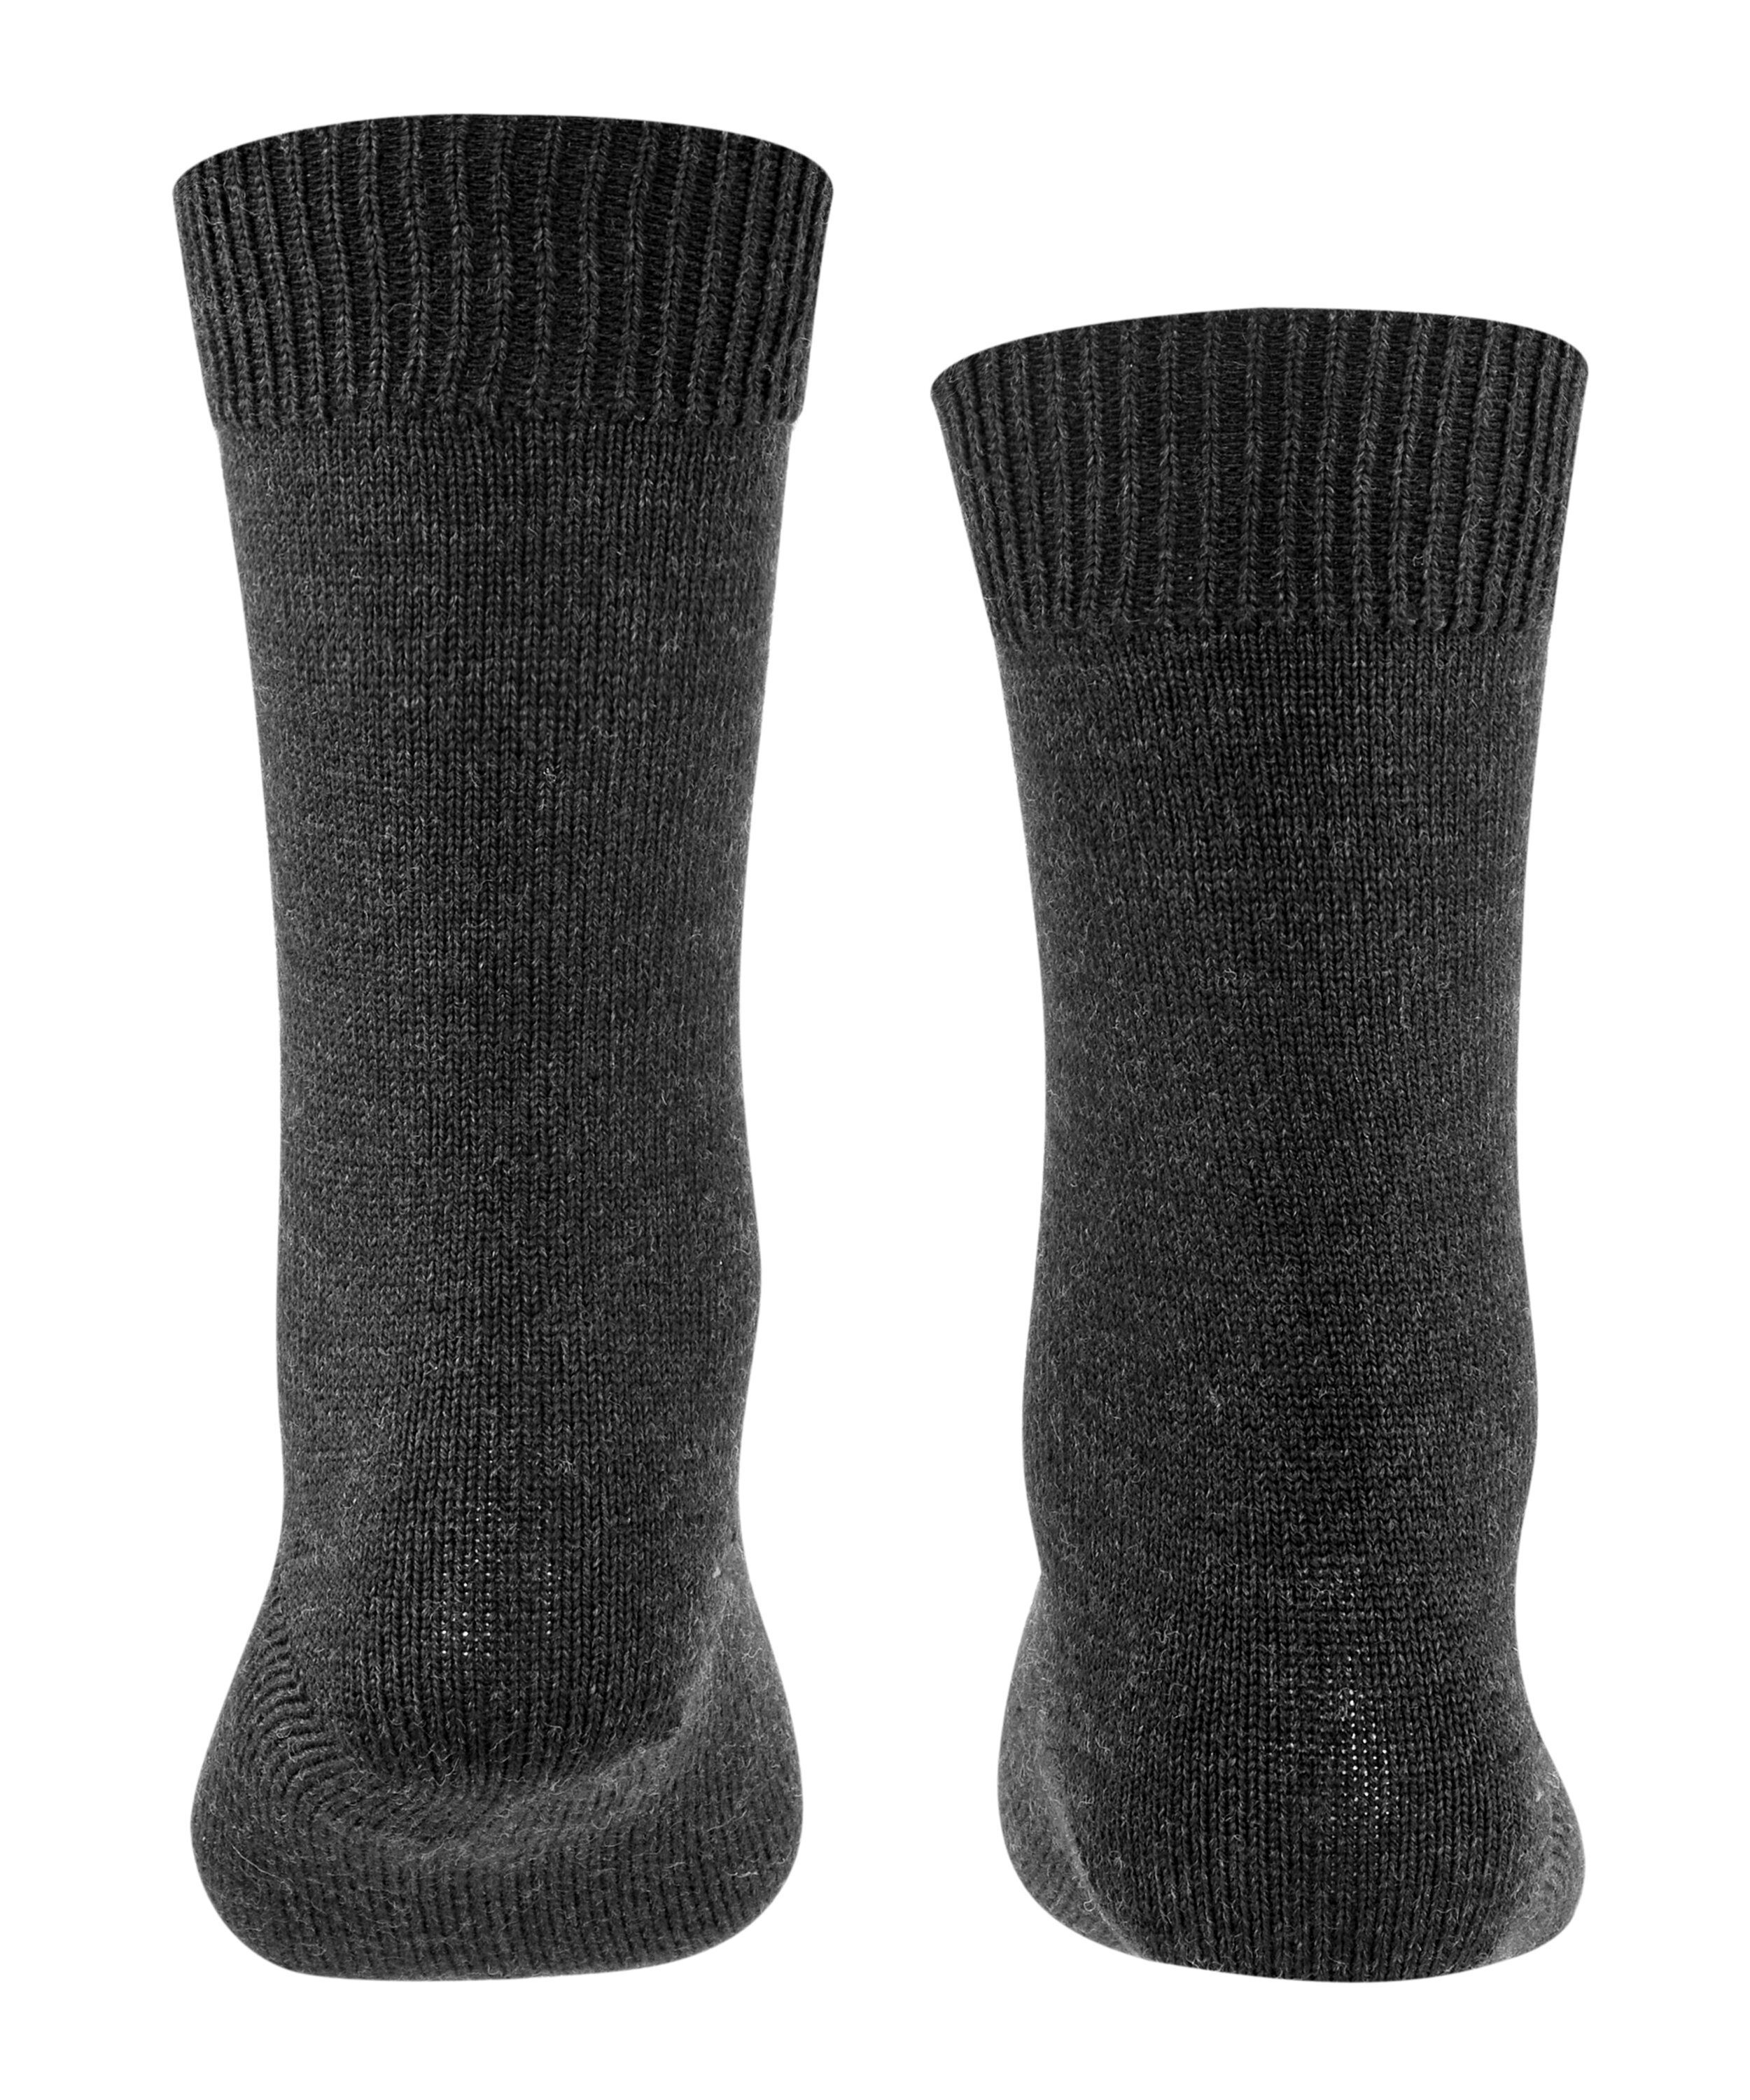 Comfort FALKE Wool (1-Paar) anthra.mel Socken (3080)